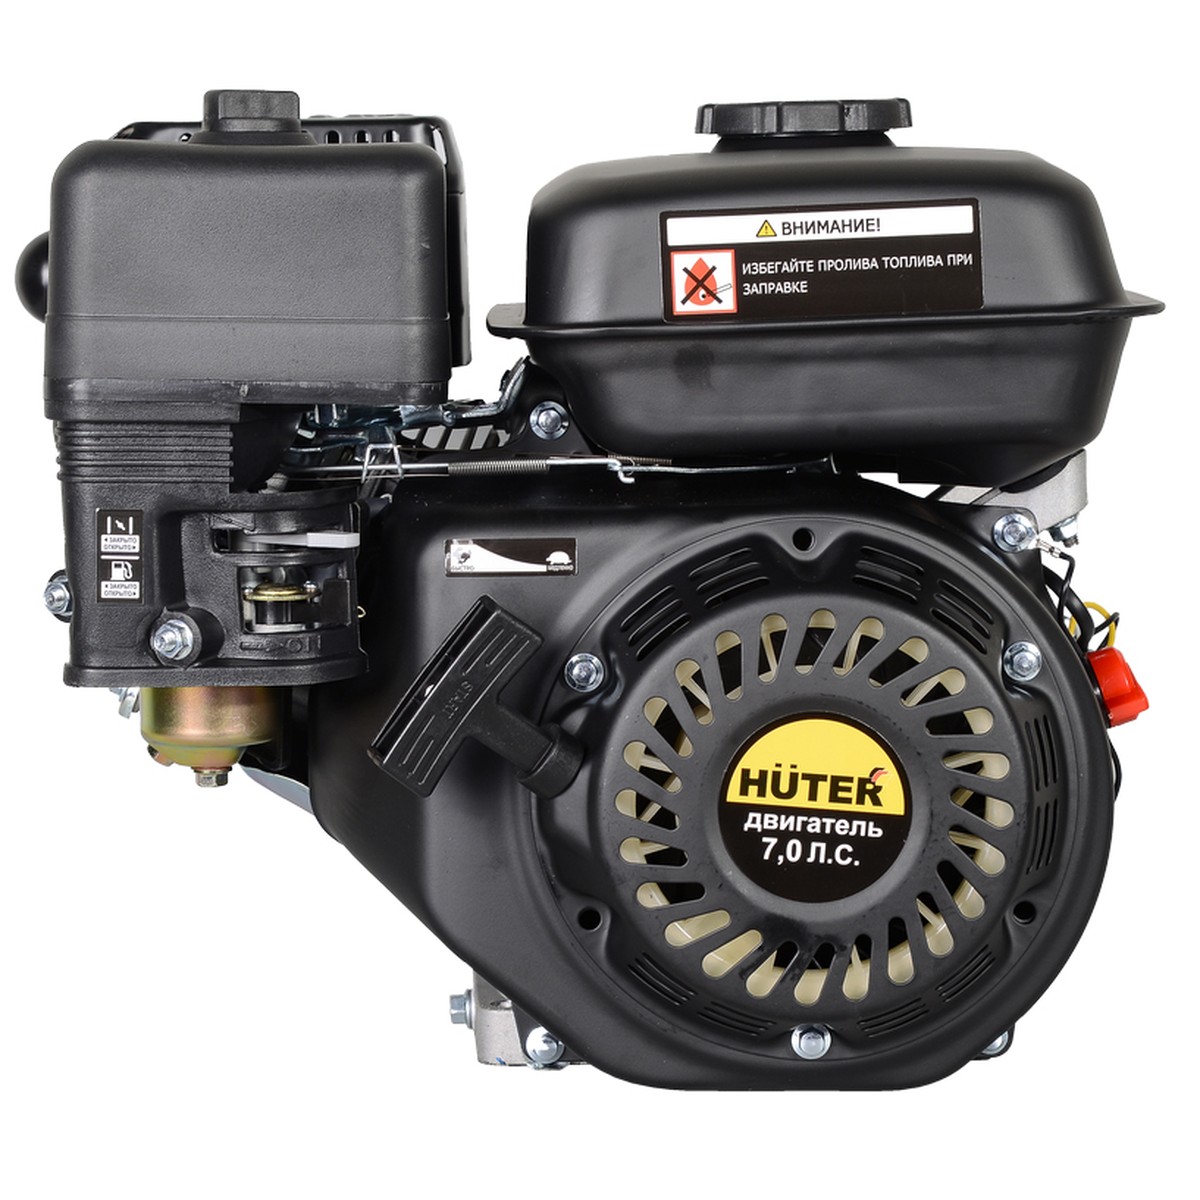 Купить двигатель бензиновый huter ge-170f-19, 7 л.с., huter 70/15/1 по .